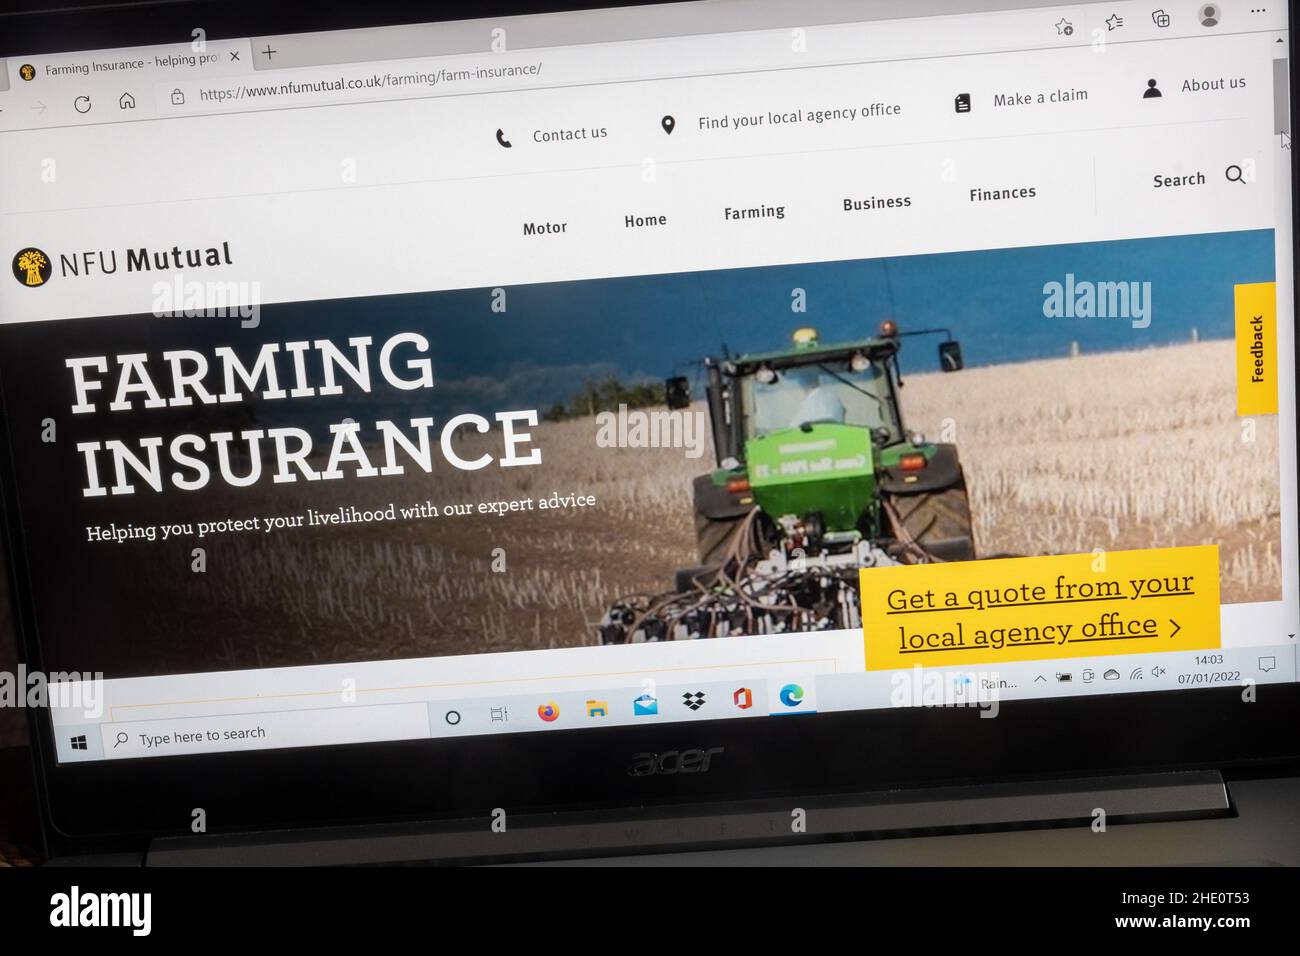 Sito web della NFU Mutual Insurance Company su un computer portatile, Regno Unito. Pagina di assicurazione agricola - protegga il vostro sostentamento. Foto Stock